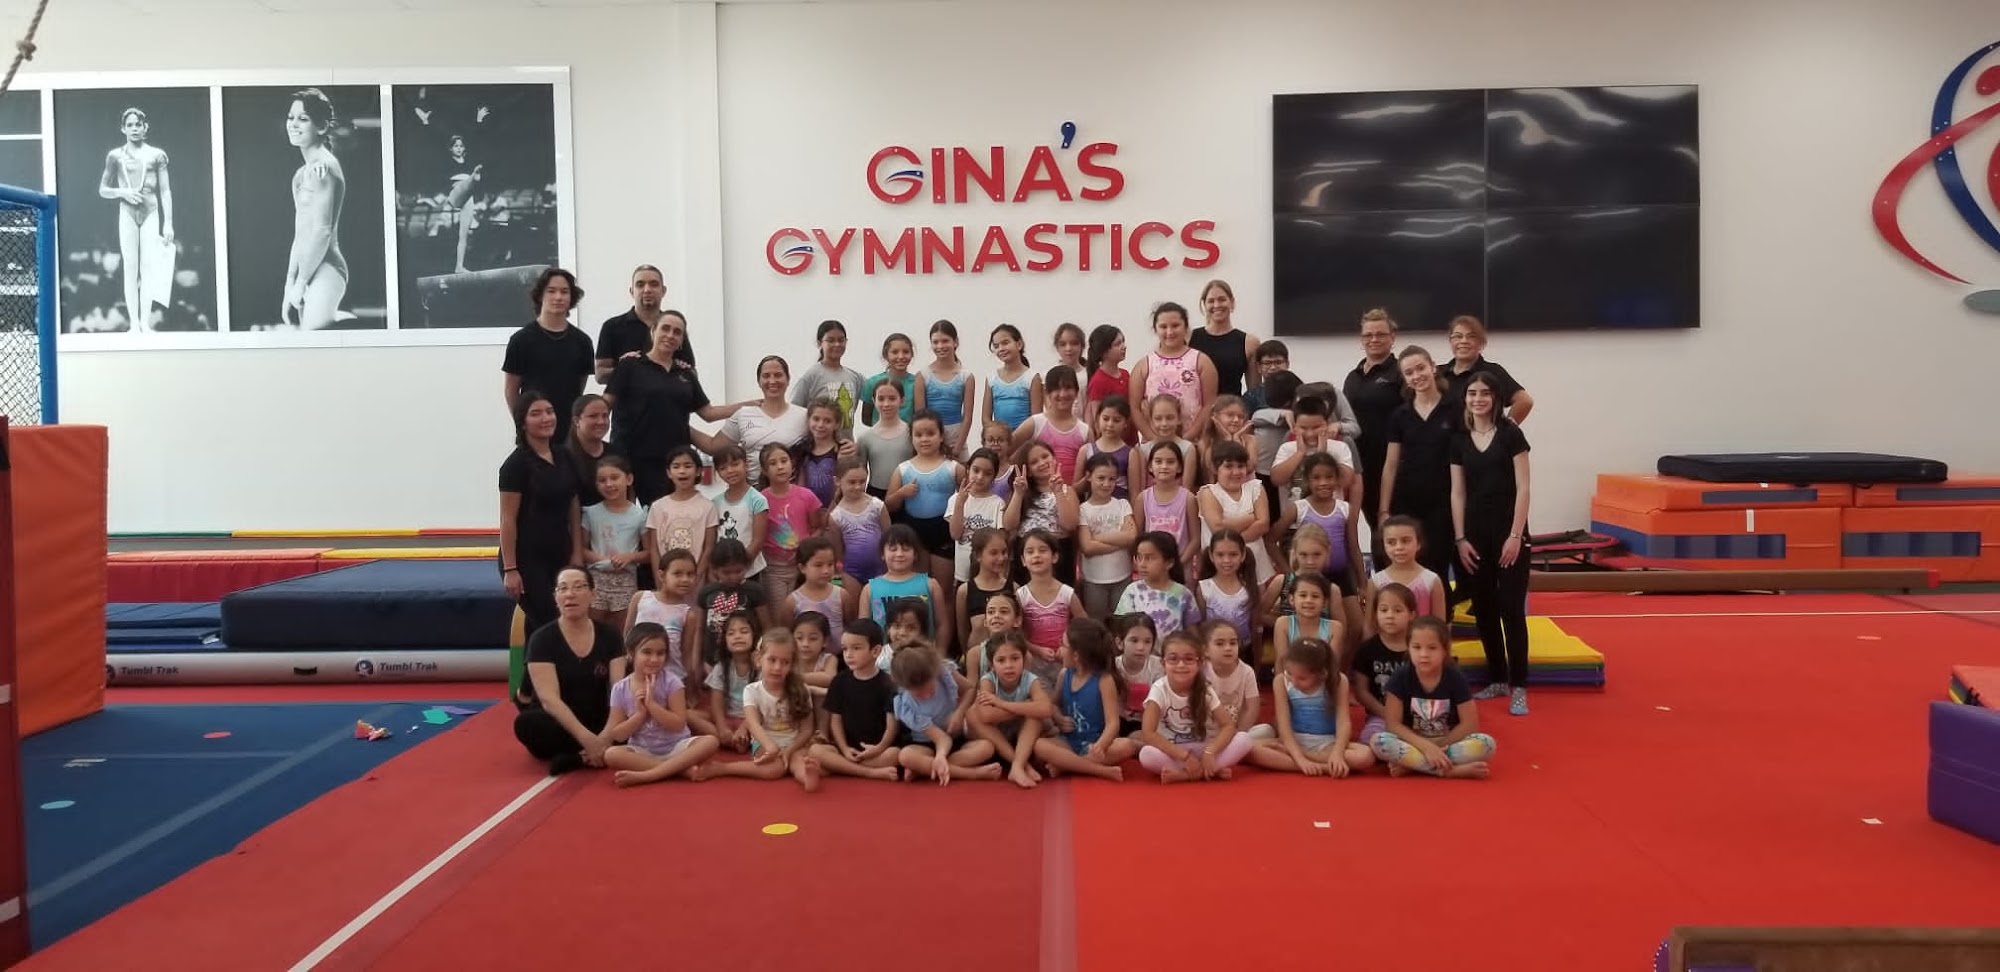 Gina's Gymnastics